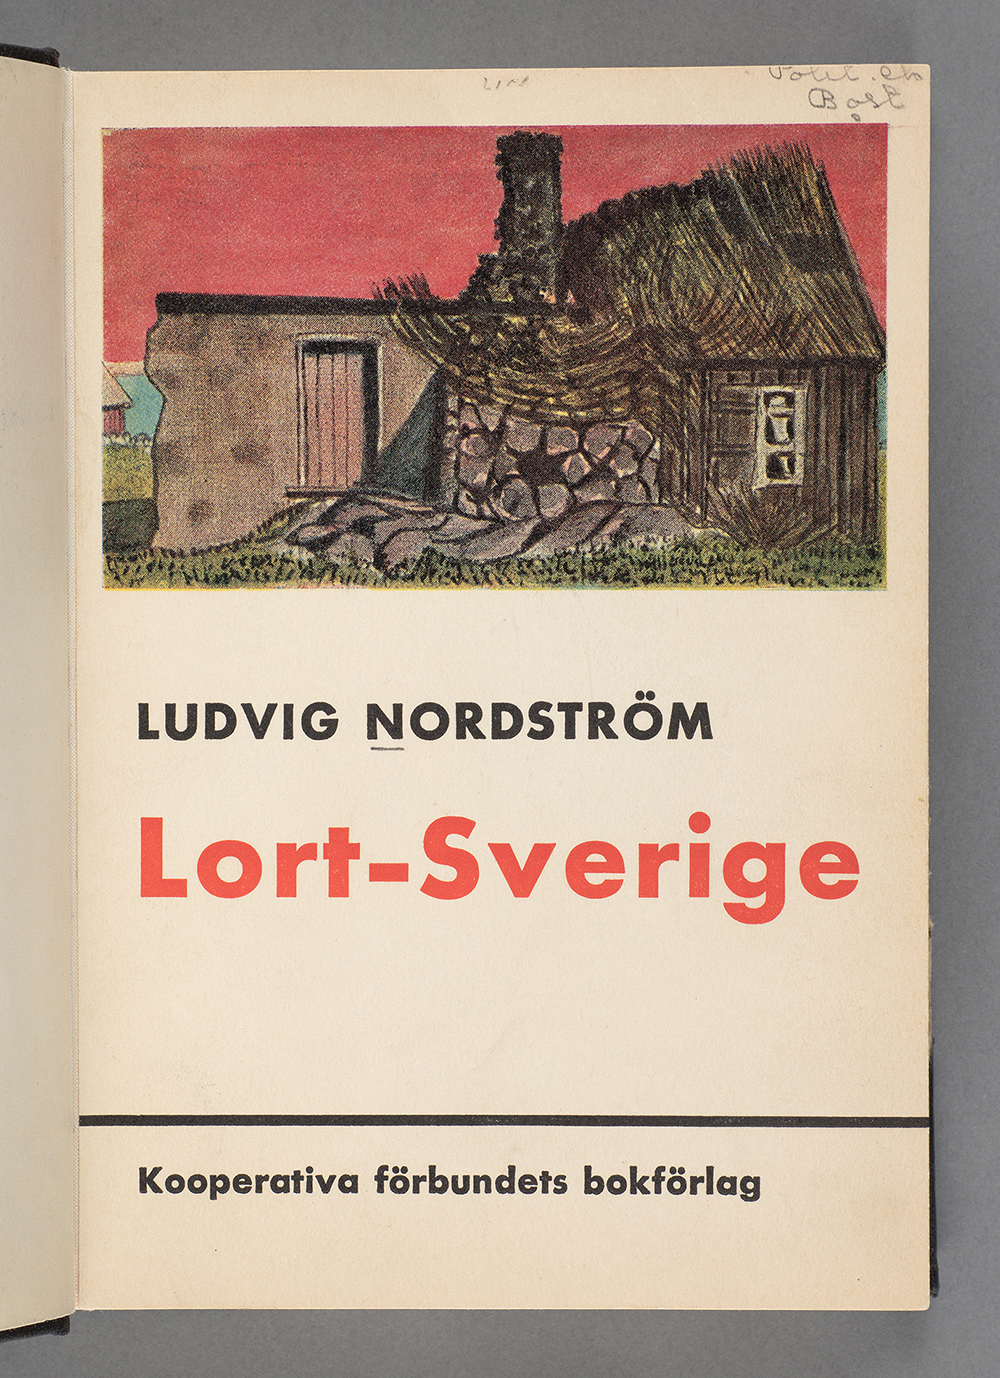 Bokomslag till titeln Lort-Sverige.